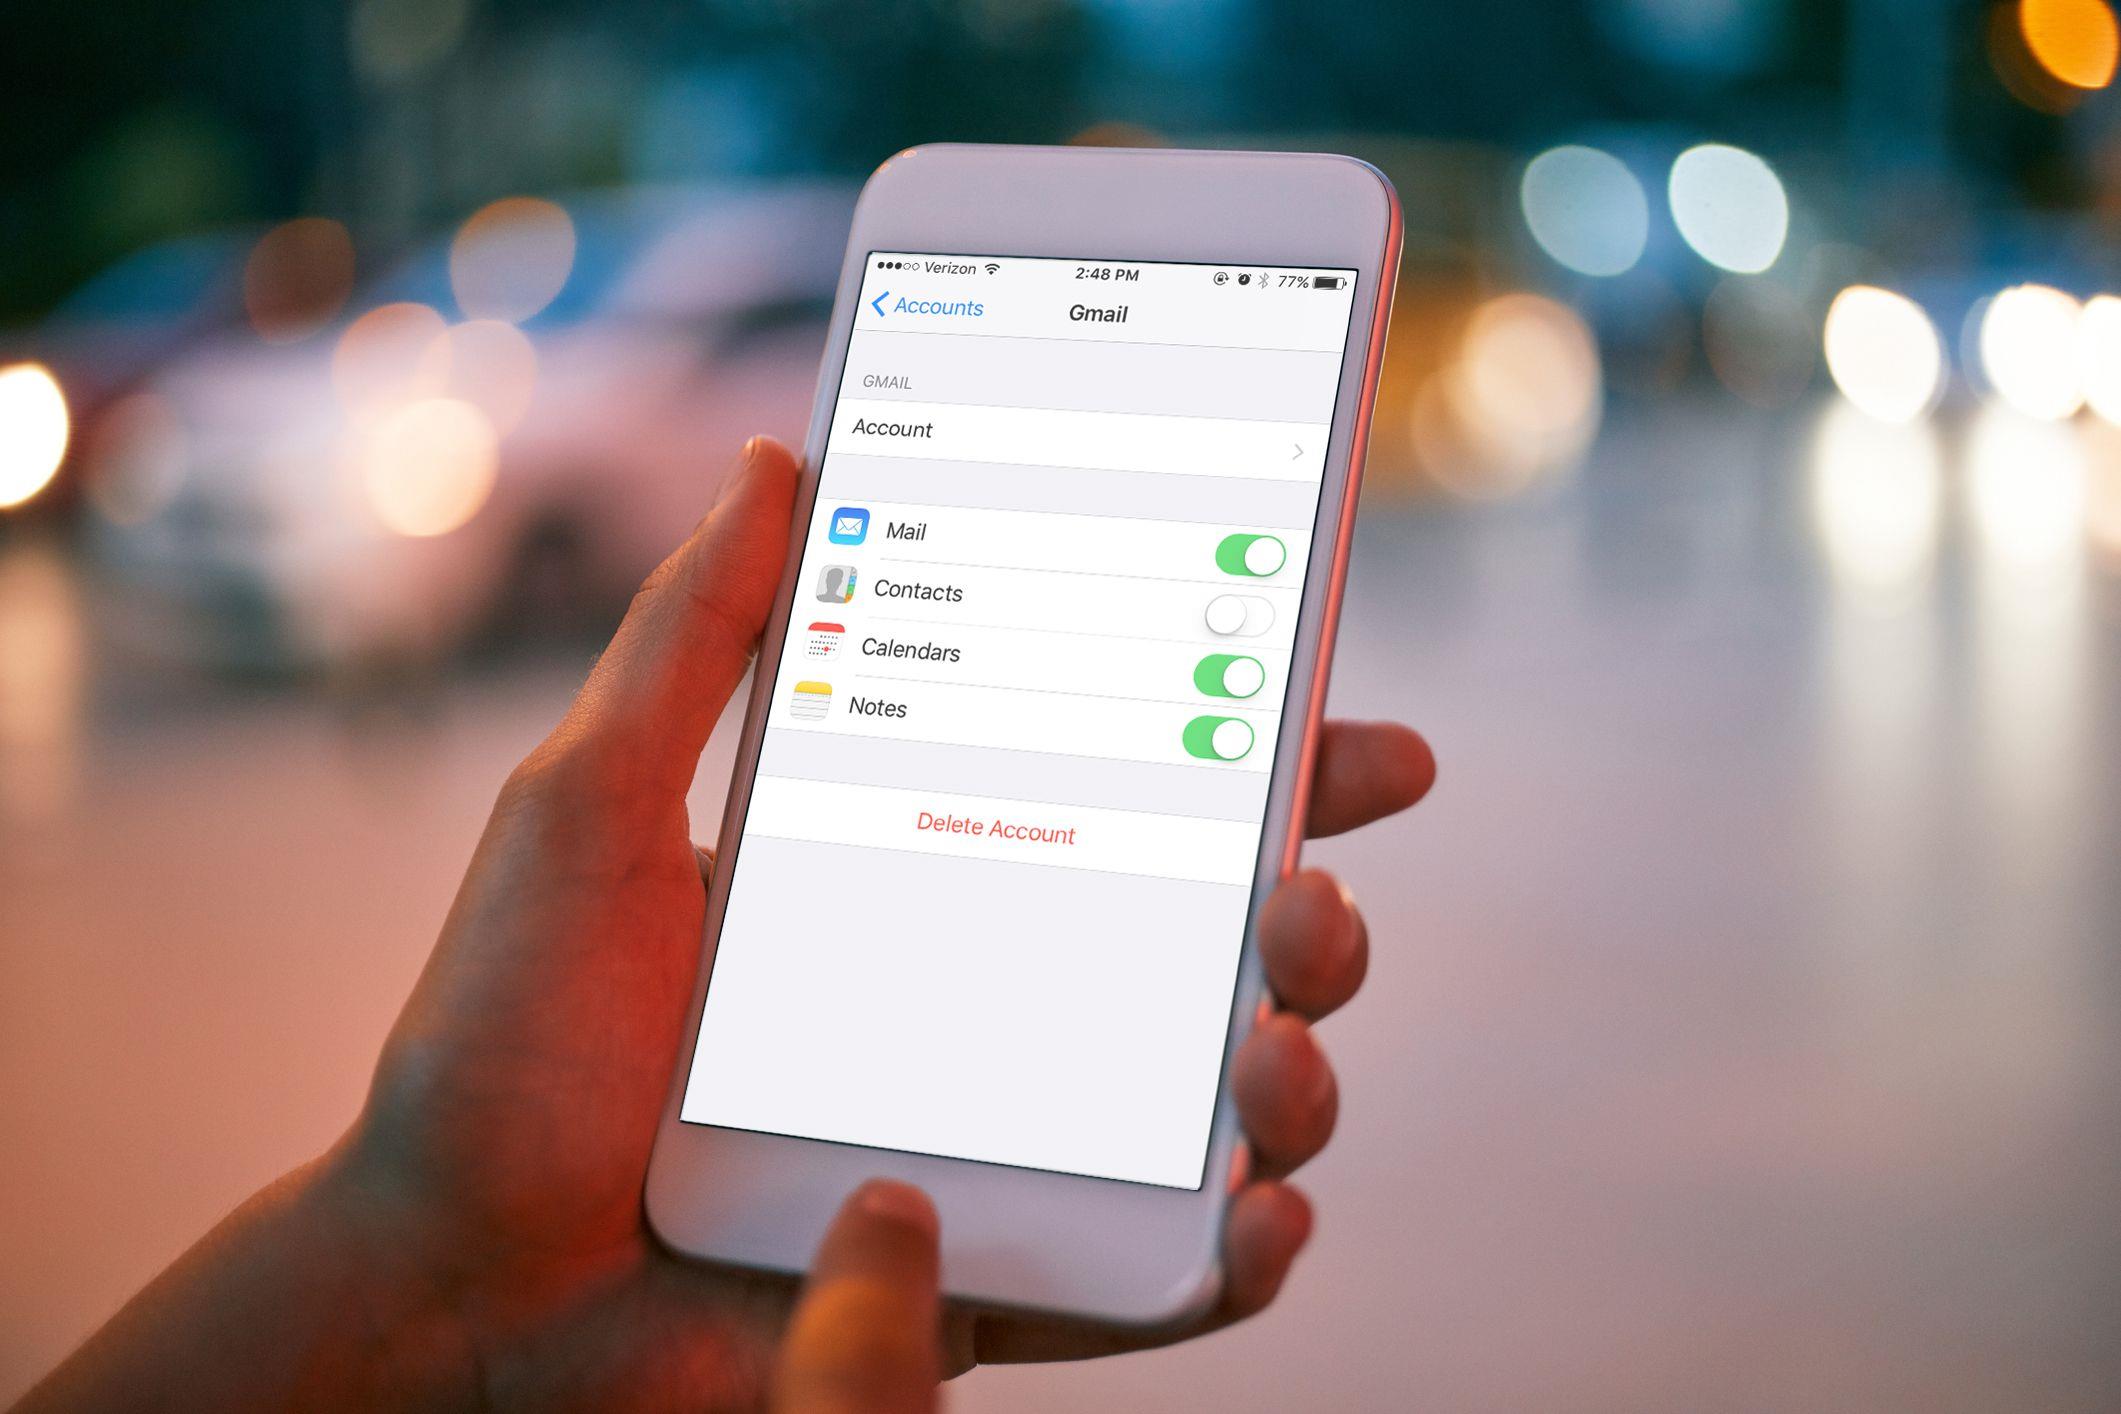 Jak Usunac Konto E Mail W Telefonie Iphone Porady Testy Opinie O Produktach Firmy Apple Jakmac